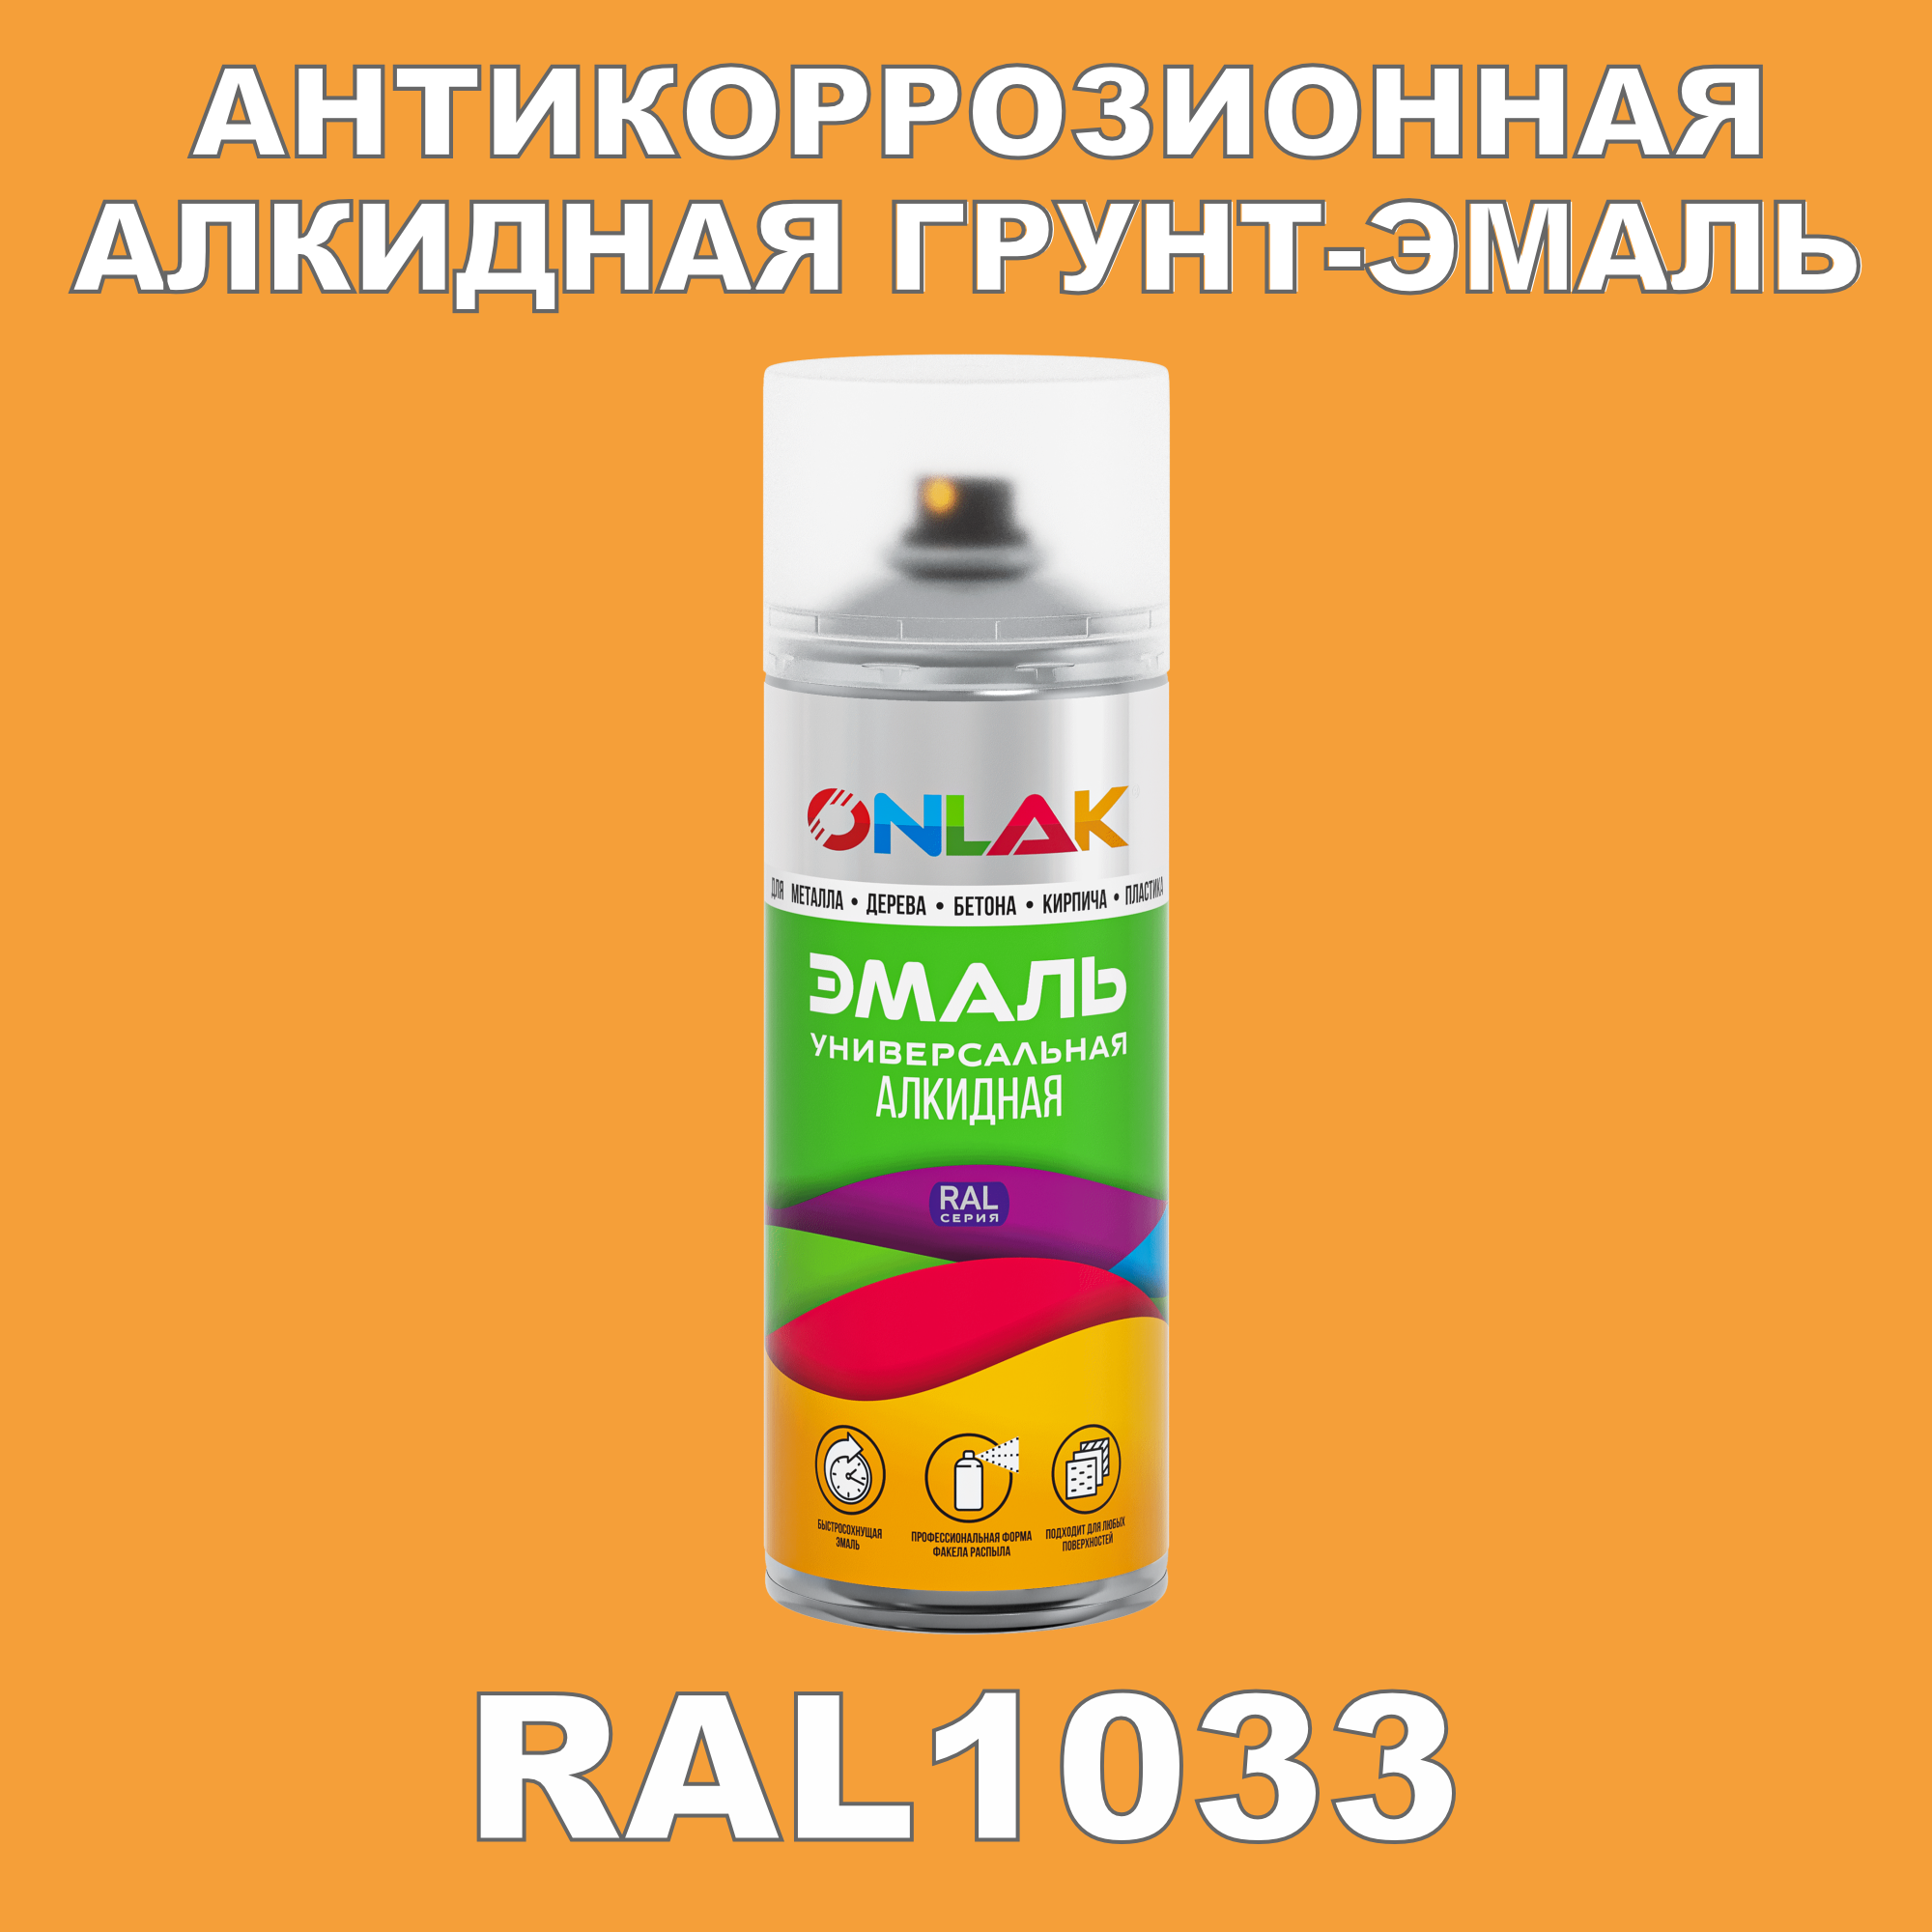 Антикоррозионная грунт-эмаль ONLAK RAL1033 полуматовая для металла и защиты от ржавчины